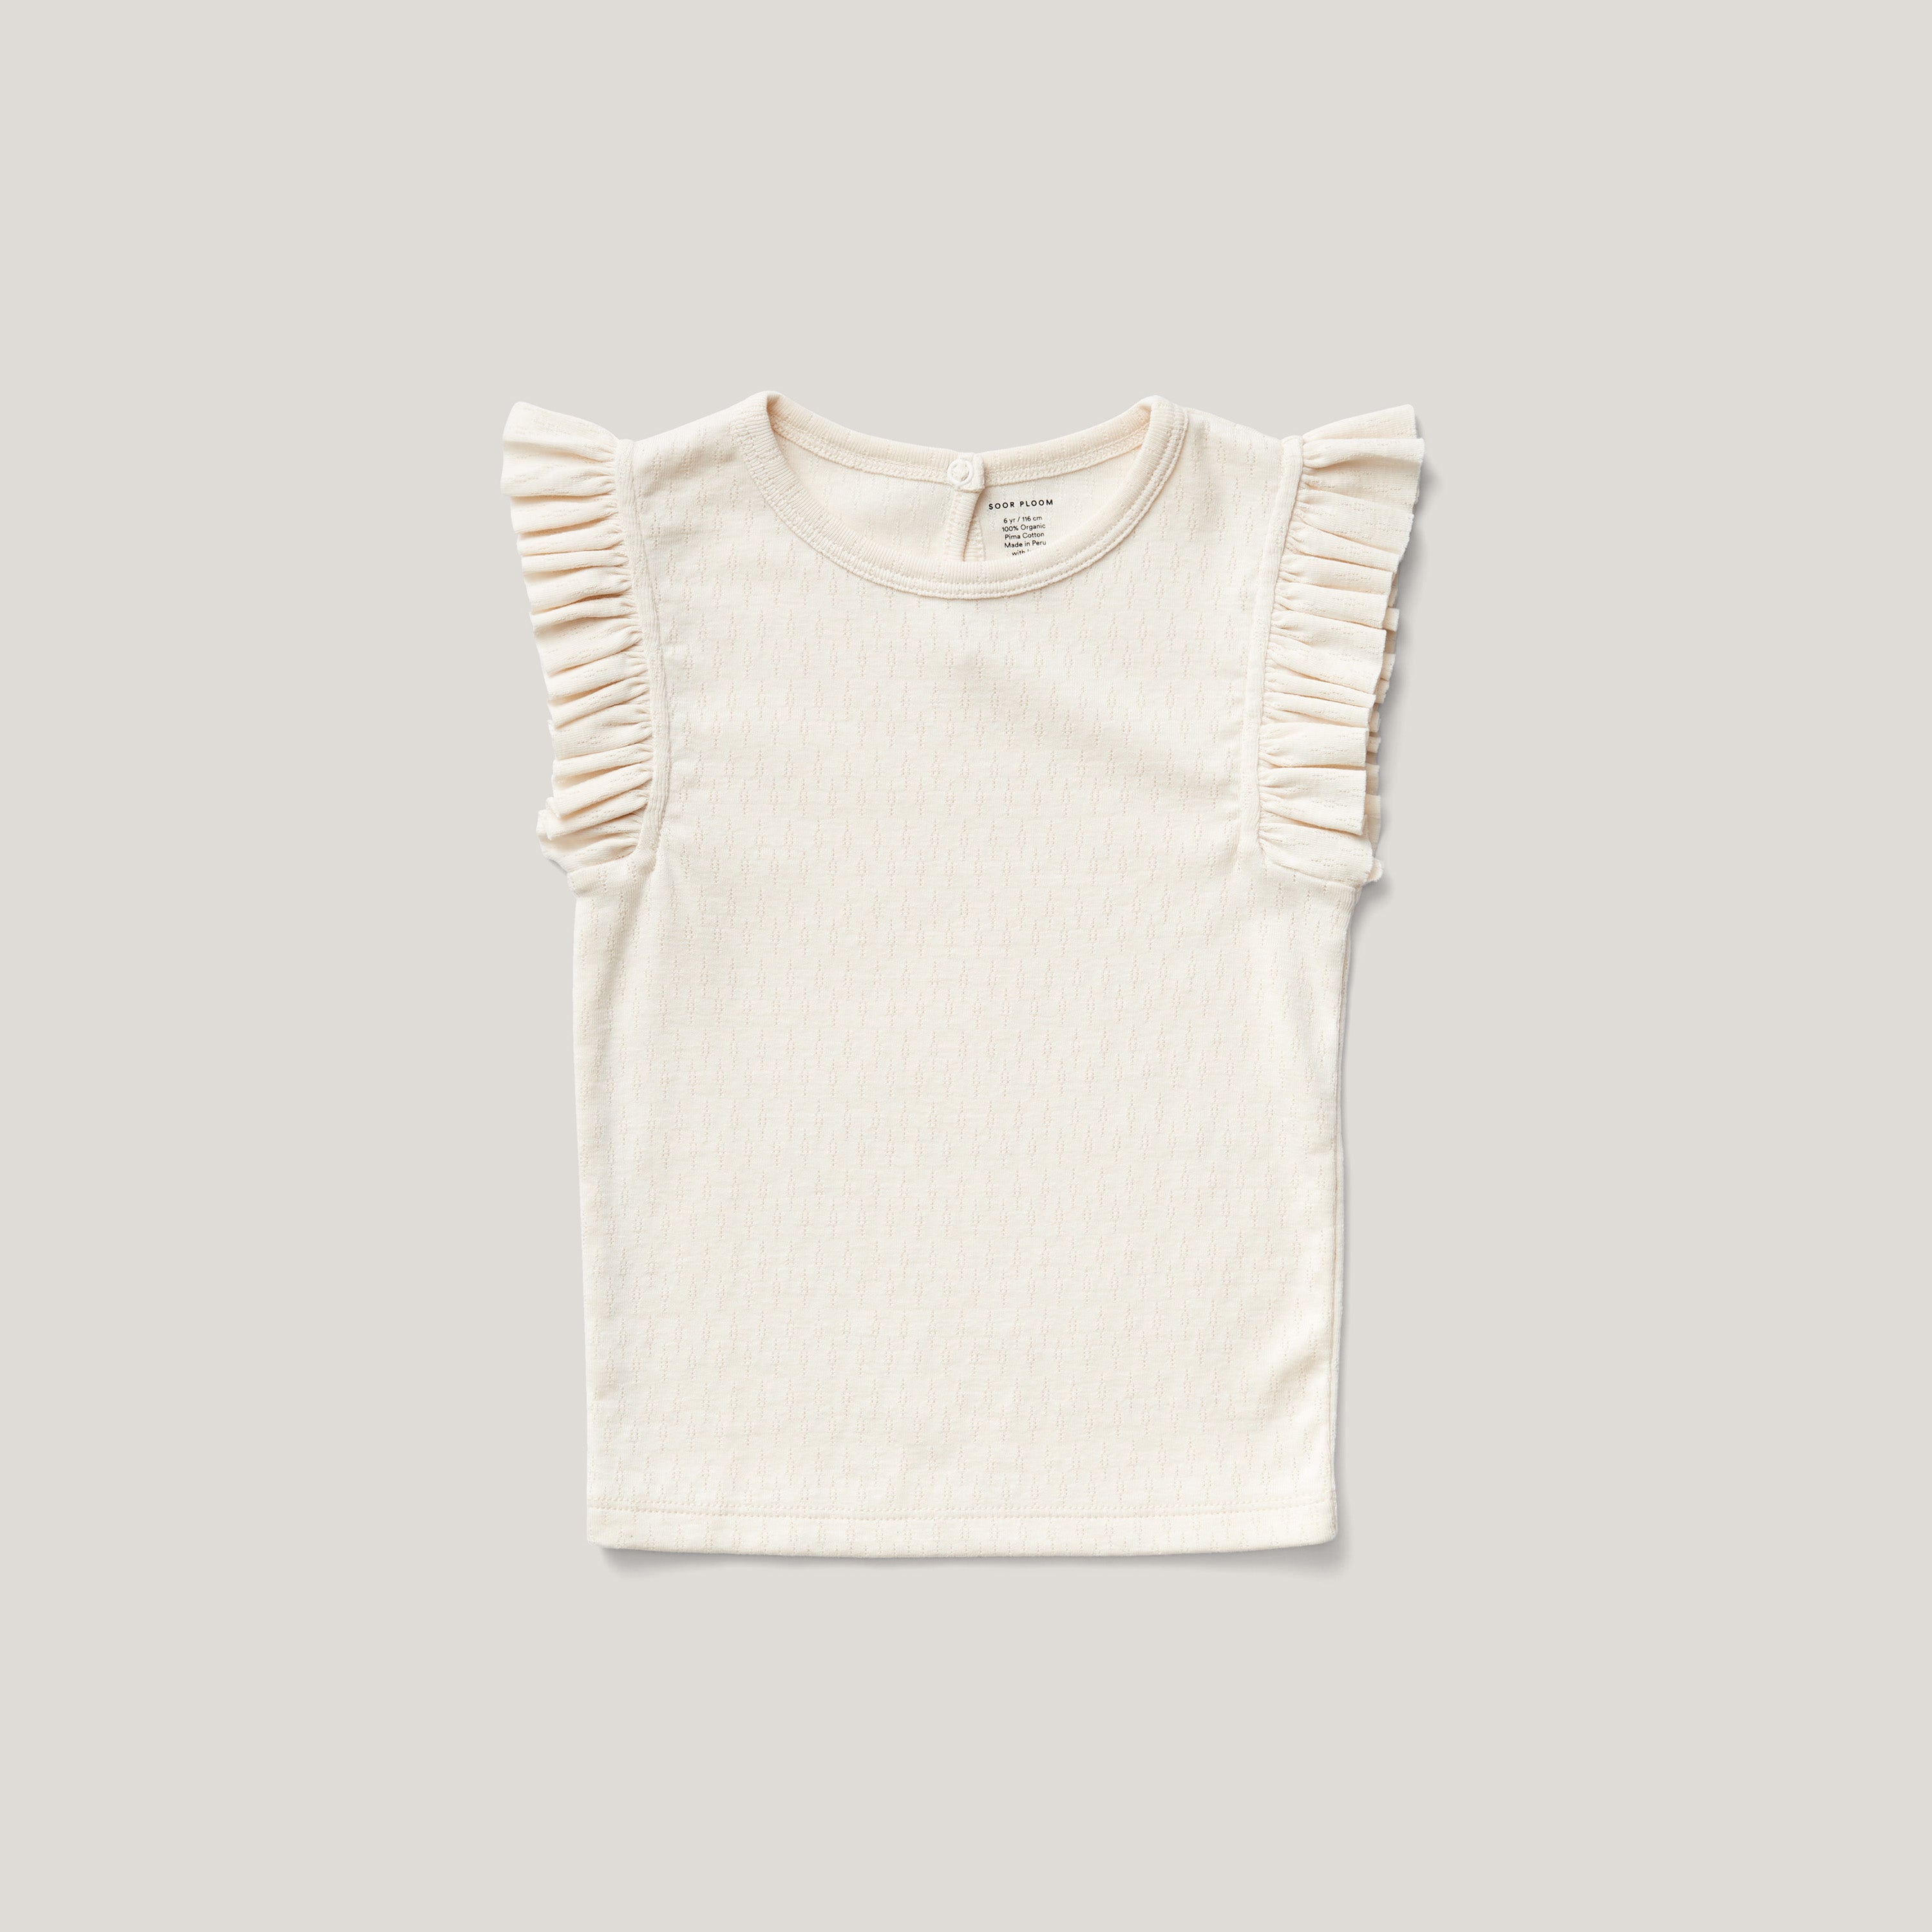 soor ploom essential 6y - Tシャツ/カットソー